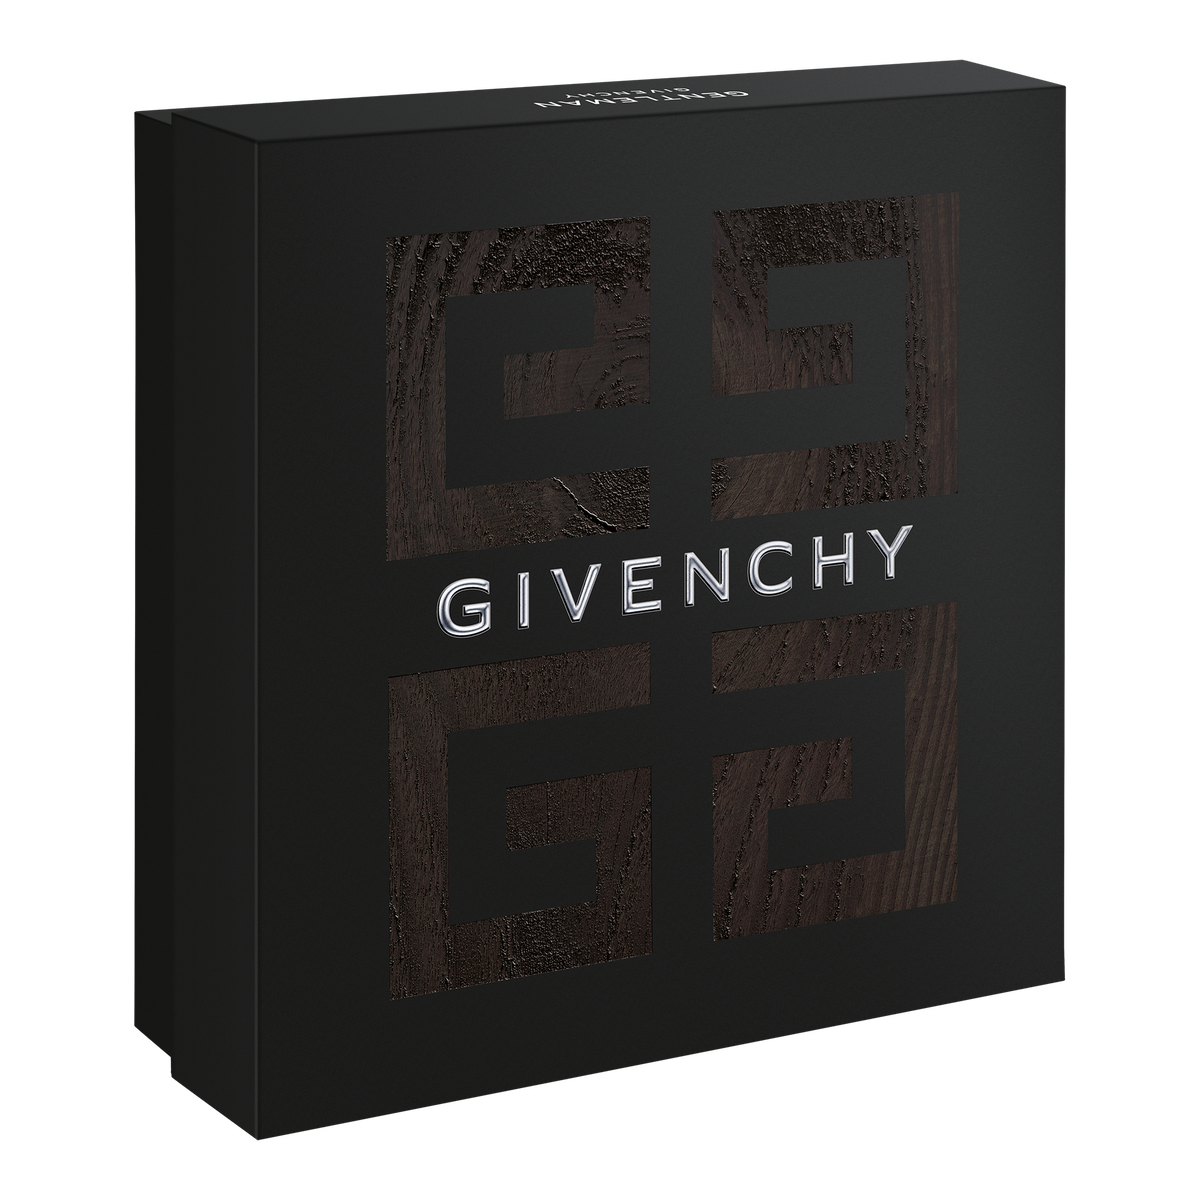 Givenchy Foudroyant Eau De Parfum 3.3oz/100 ml NEW - NO BOX